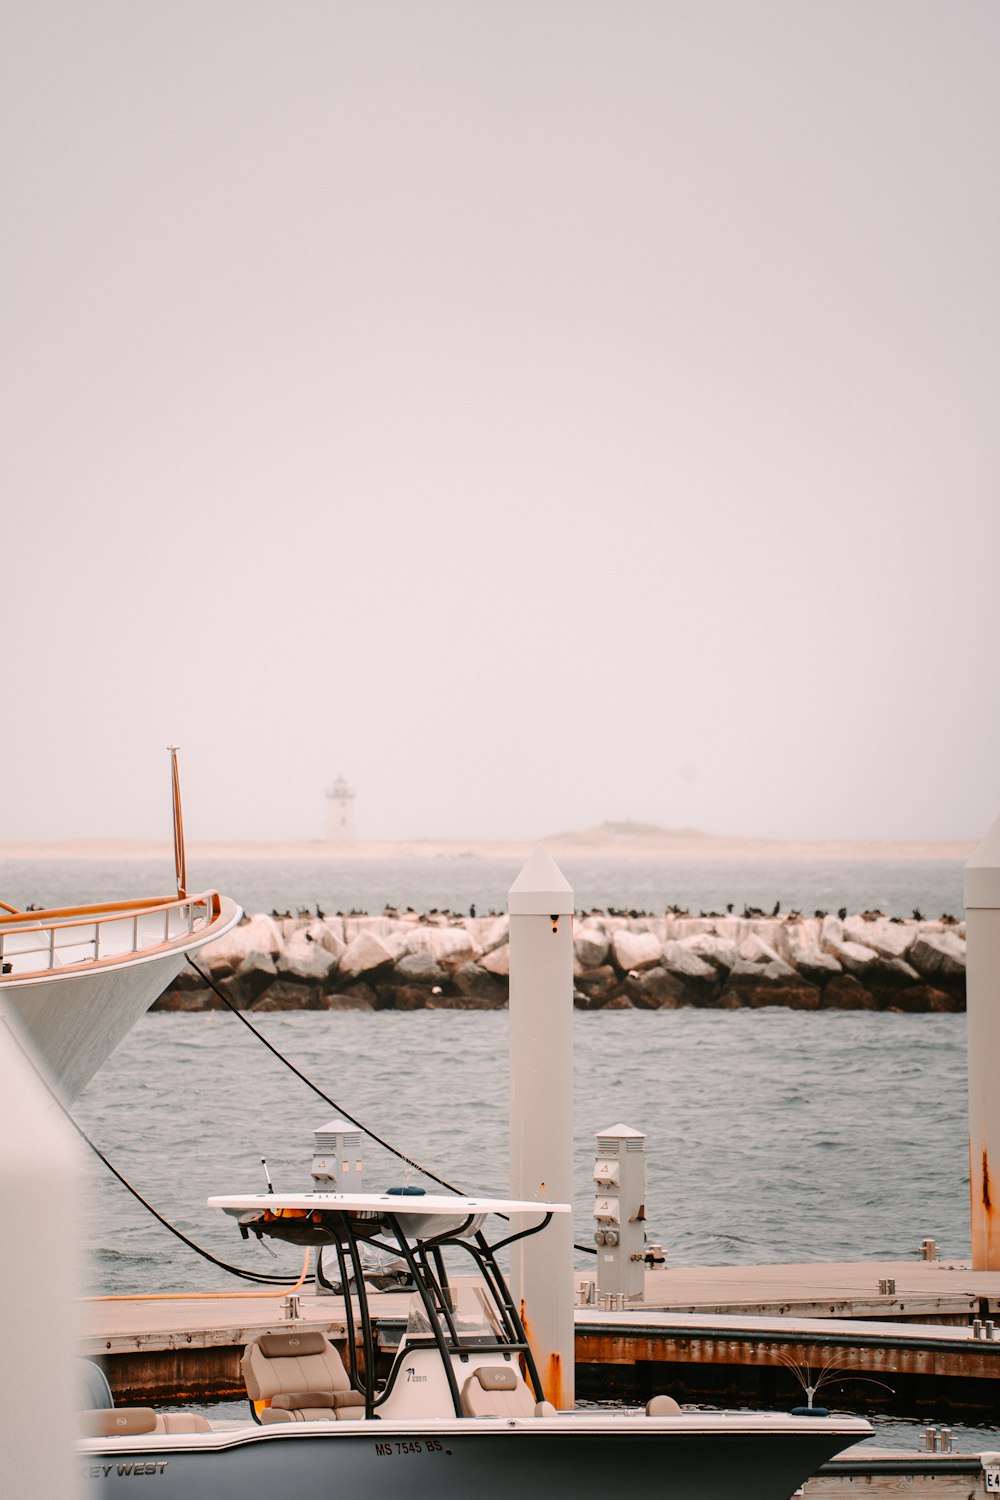 Ein Boot, das an einem Pier angedockt ist, mit einem Boot im Hintergrund